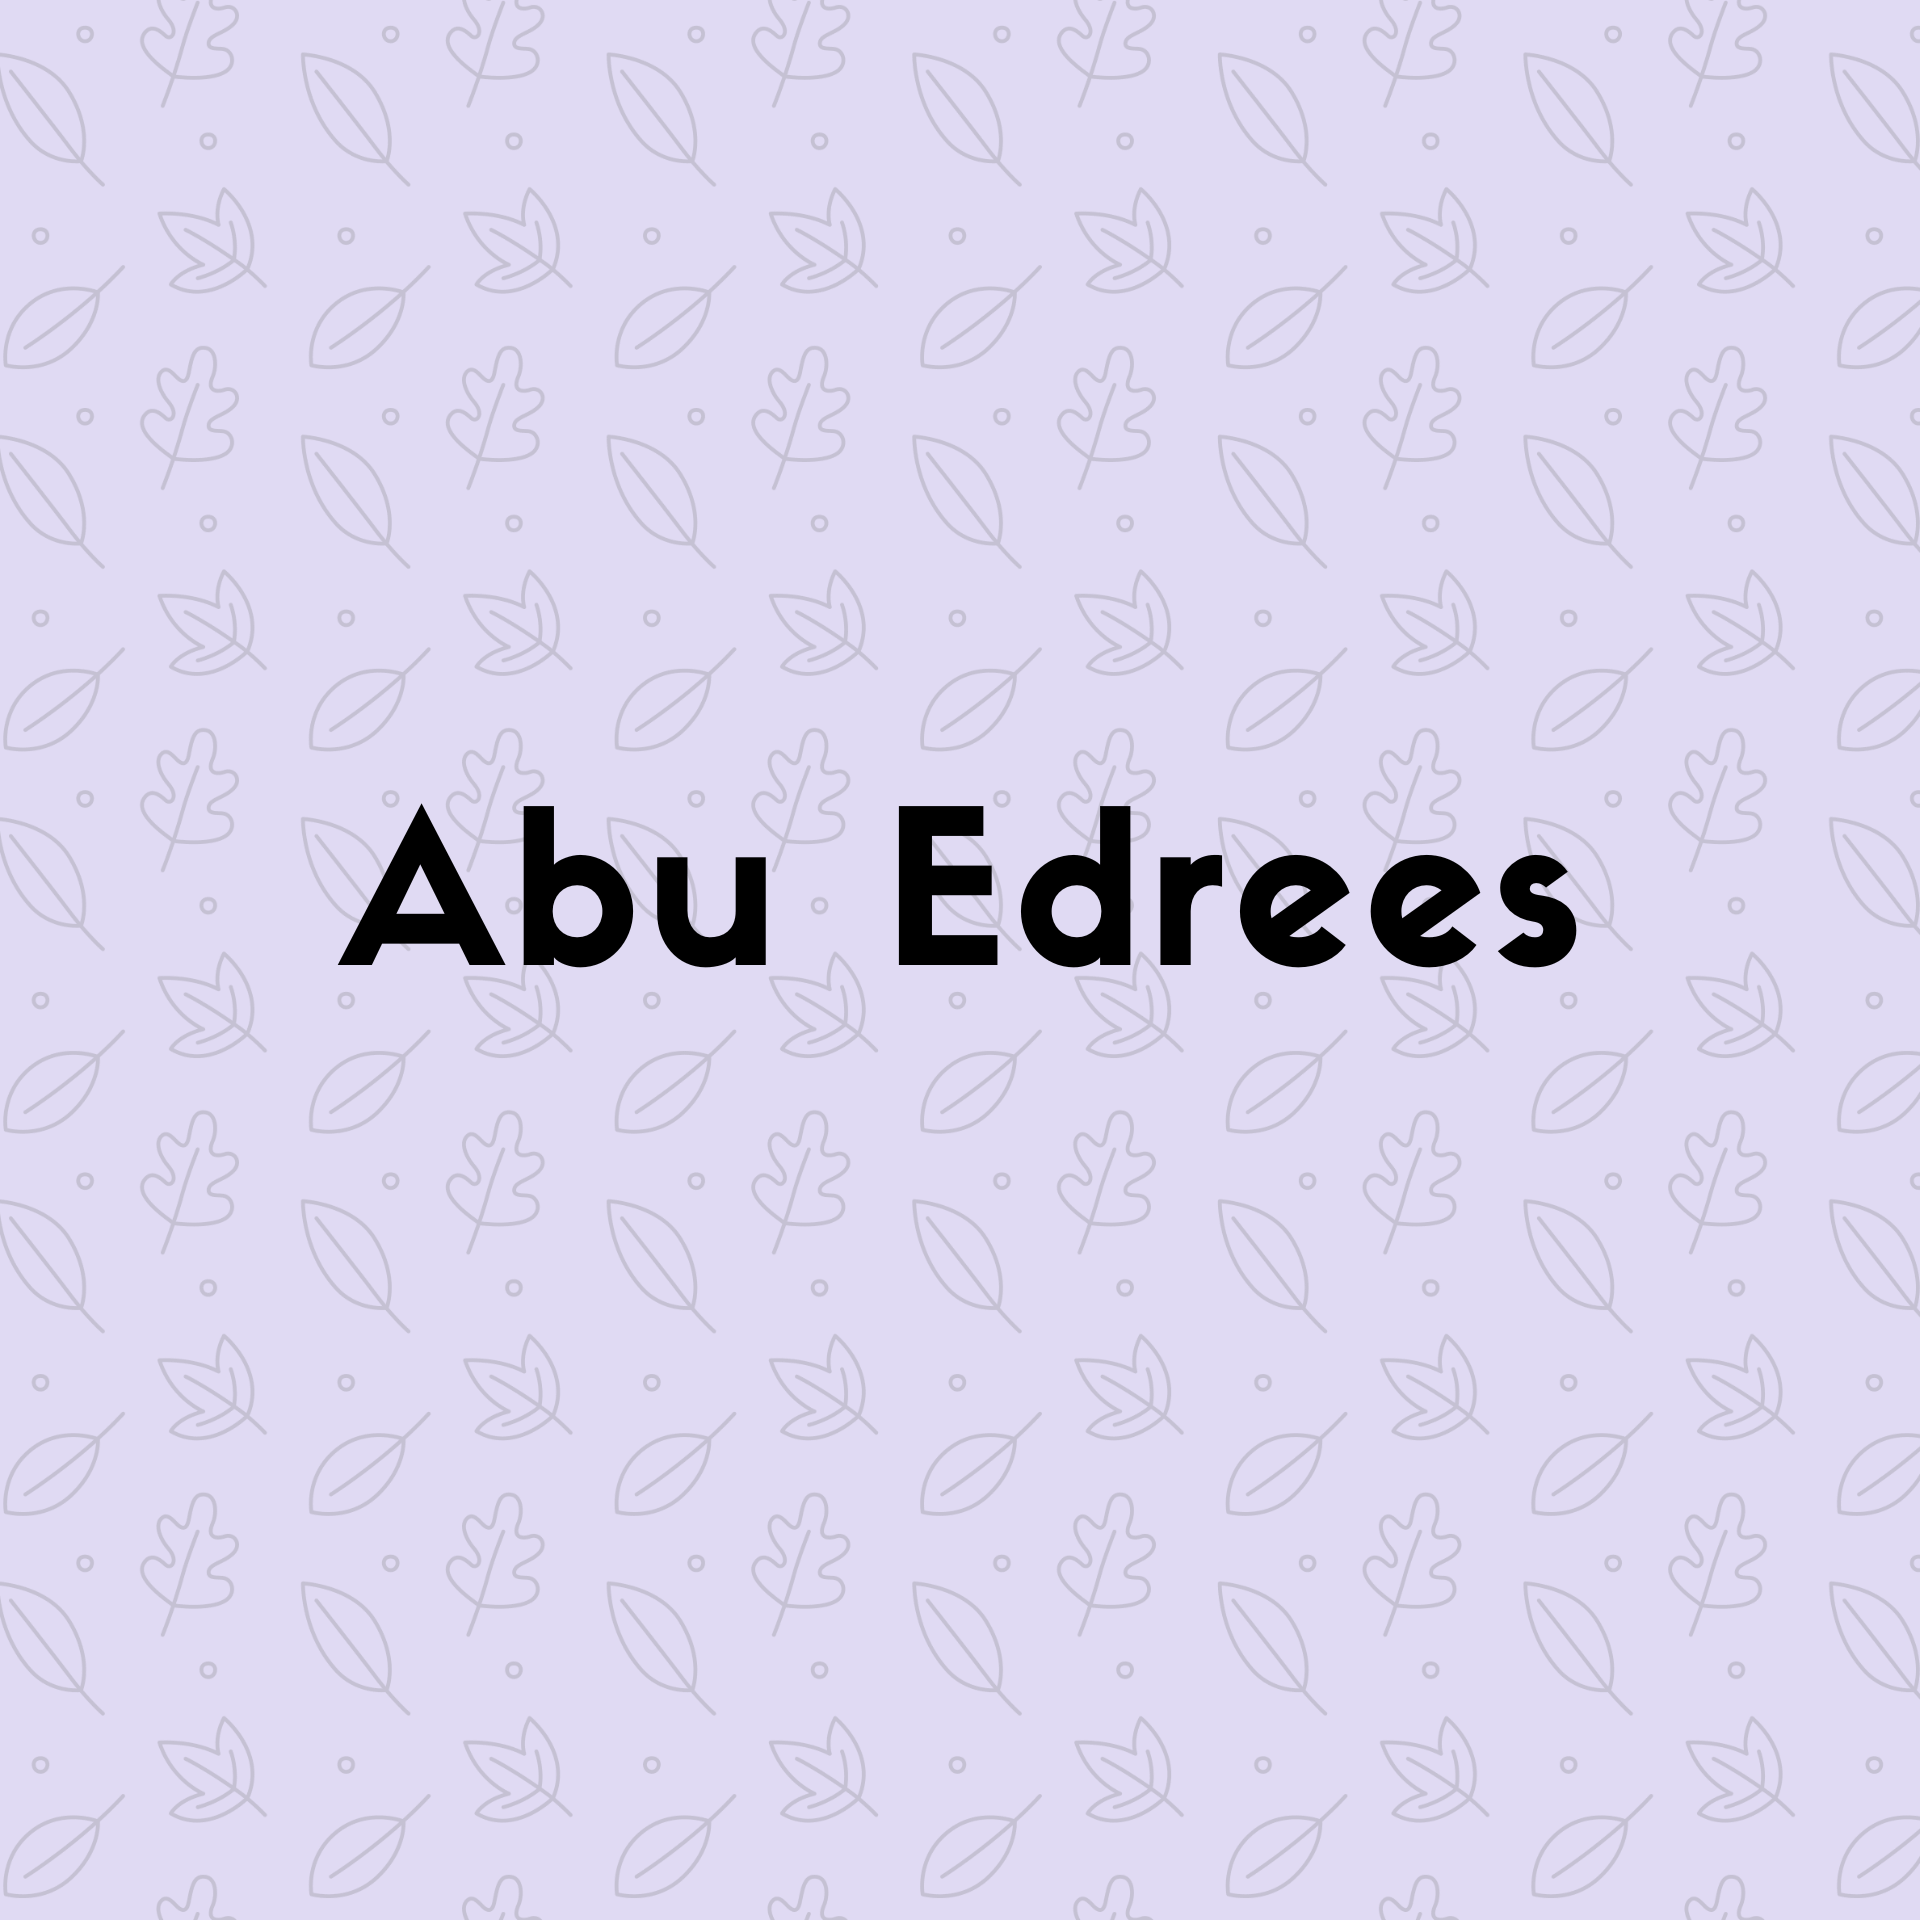  Abu Edrees